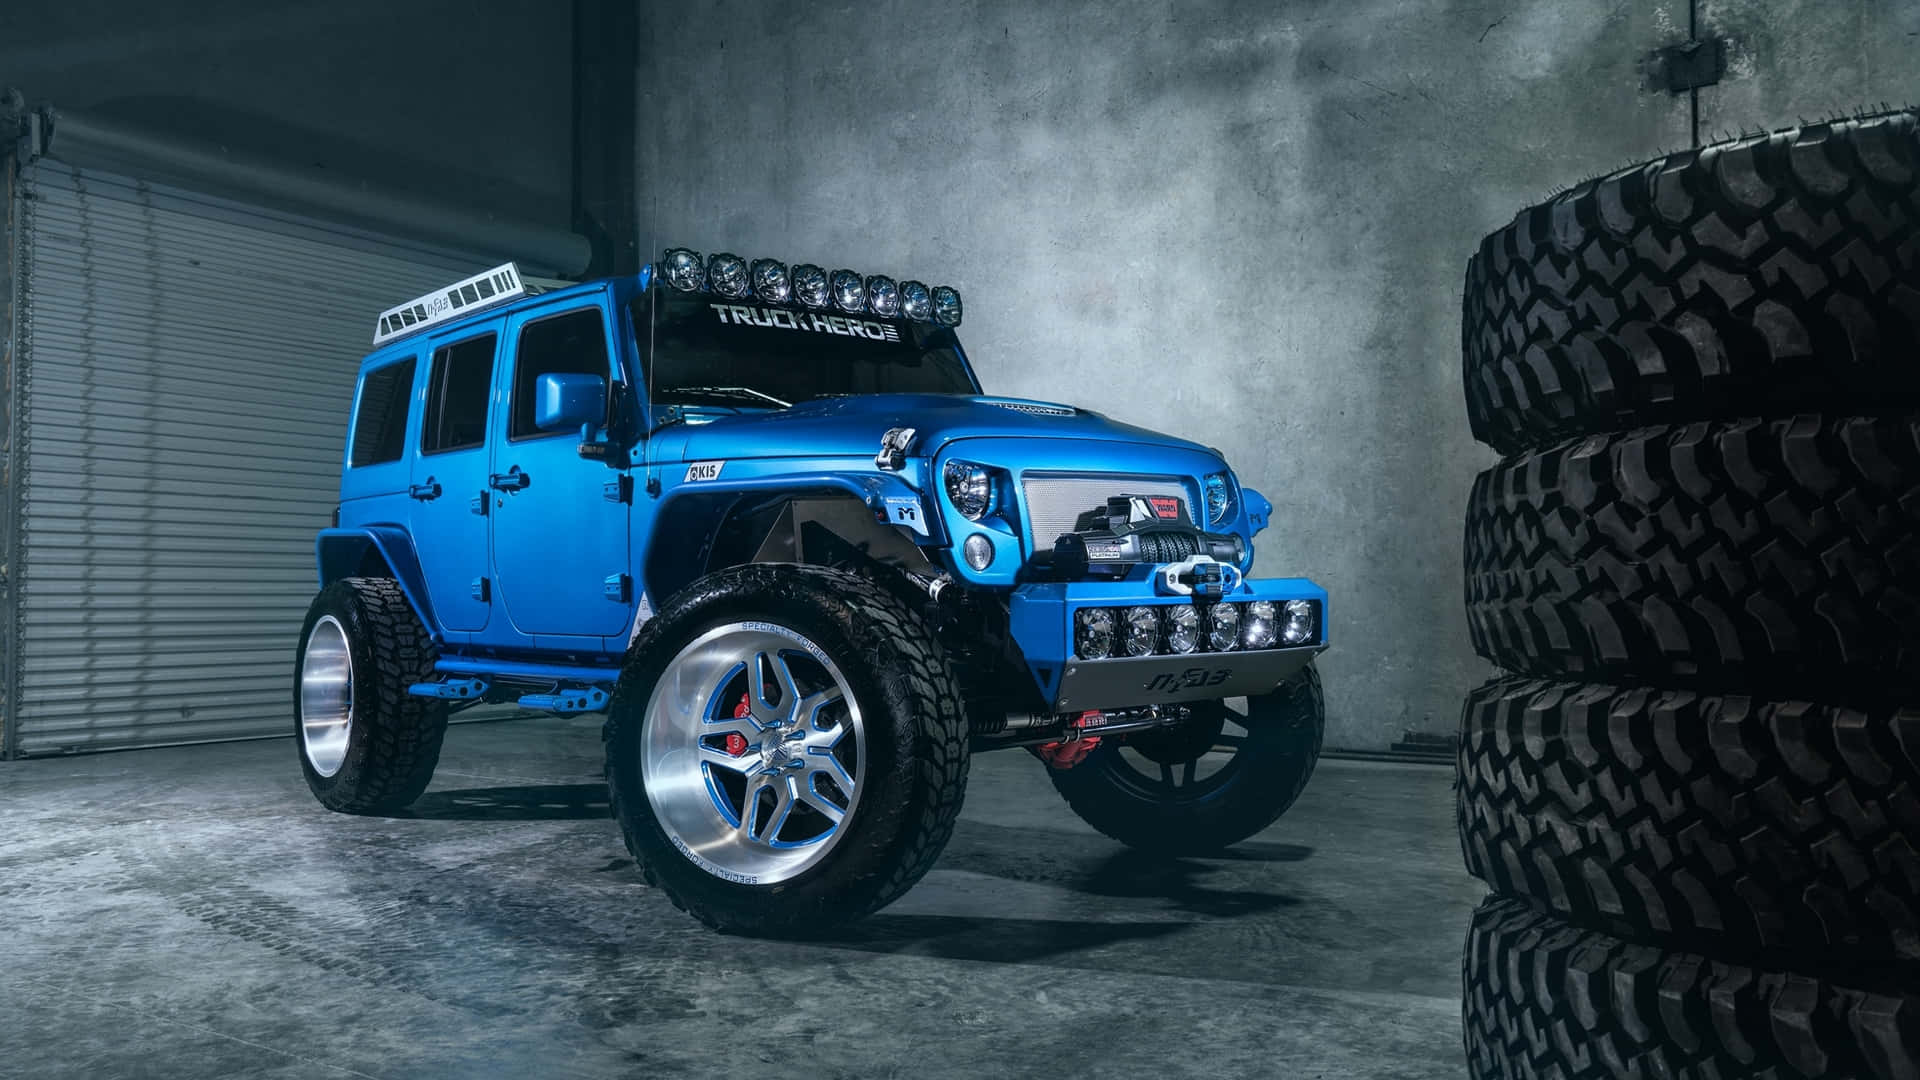 Einblauer Jeep Ist Vor Einem Reifen Geparkt.